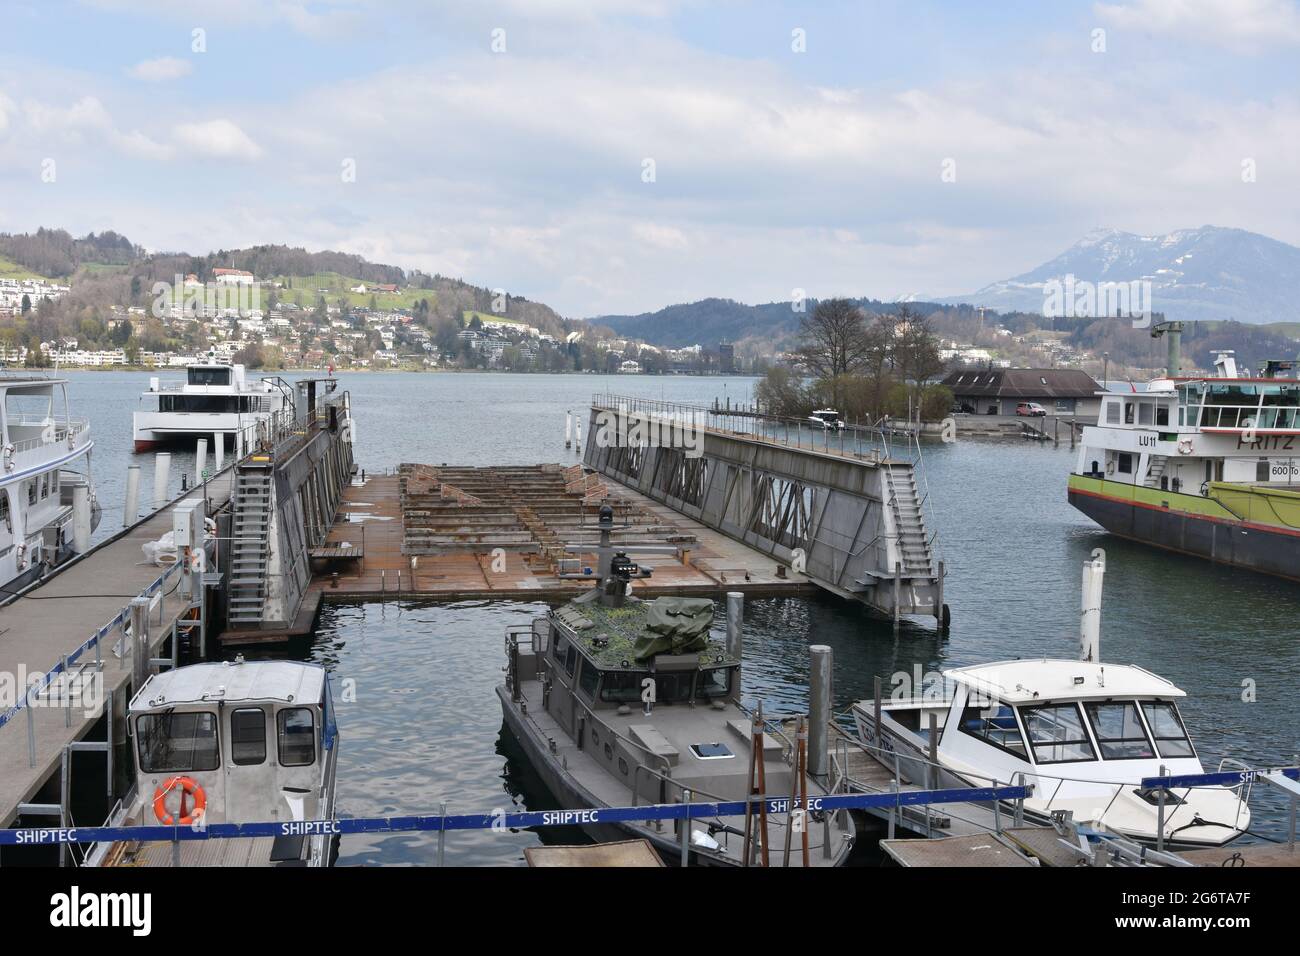 Molo galleggiante per la riparazione di navi e navi da crociera turistica sul lago di Lucerna, nel porto della città di Lucerna. Intorno sono ormeggiate piccole barche a motore. Foto Stock